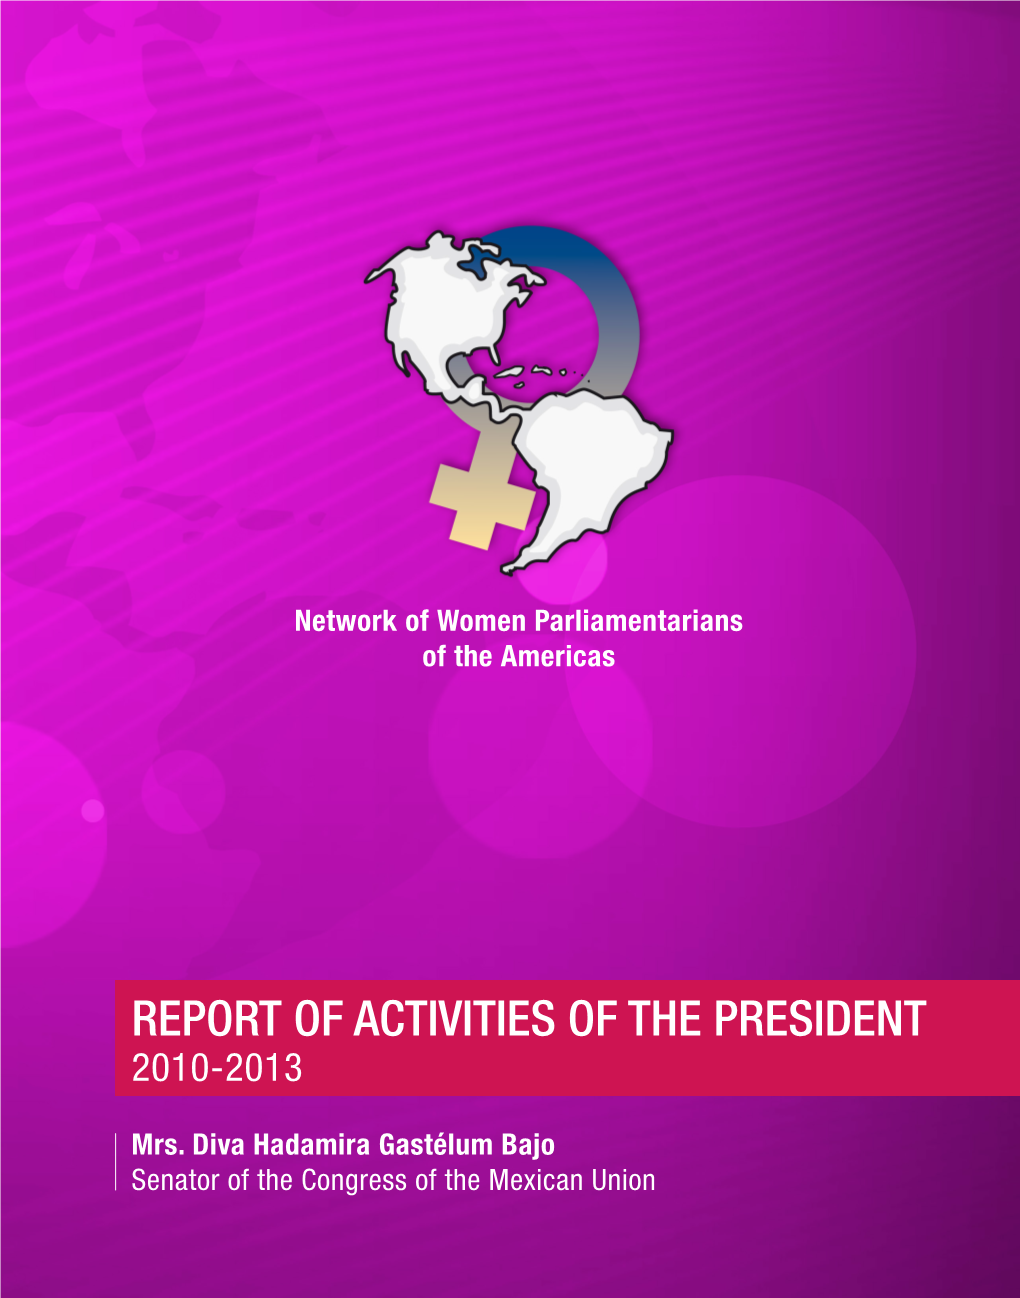 2010-2013 President's Activity Report